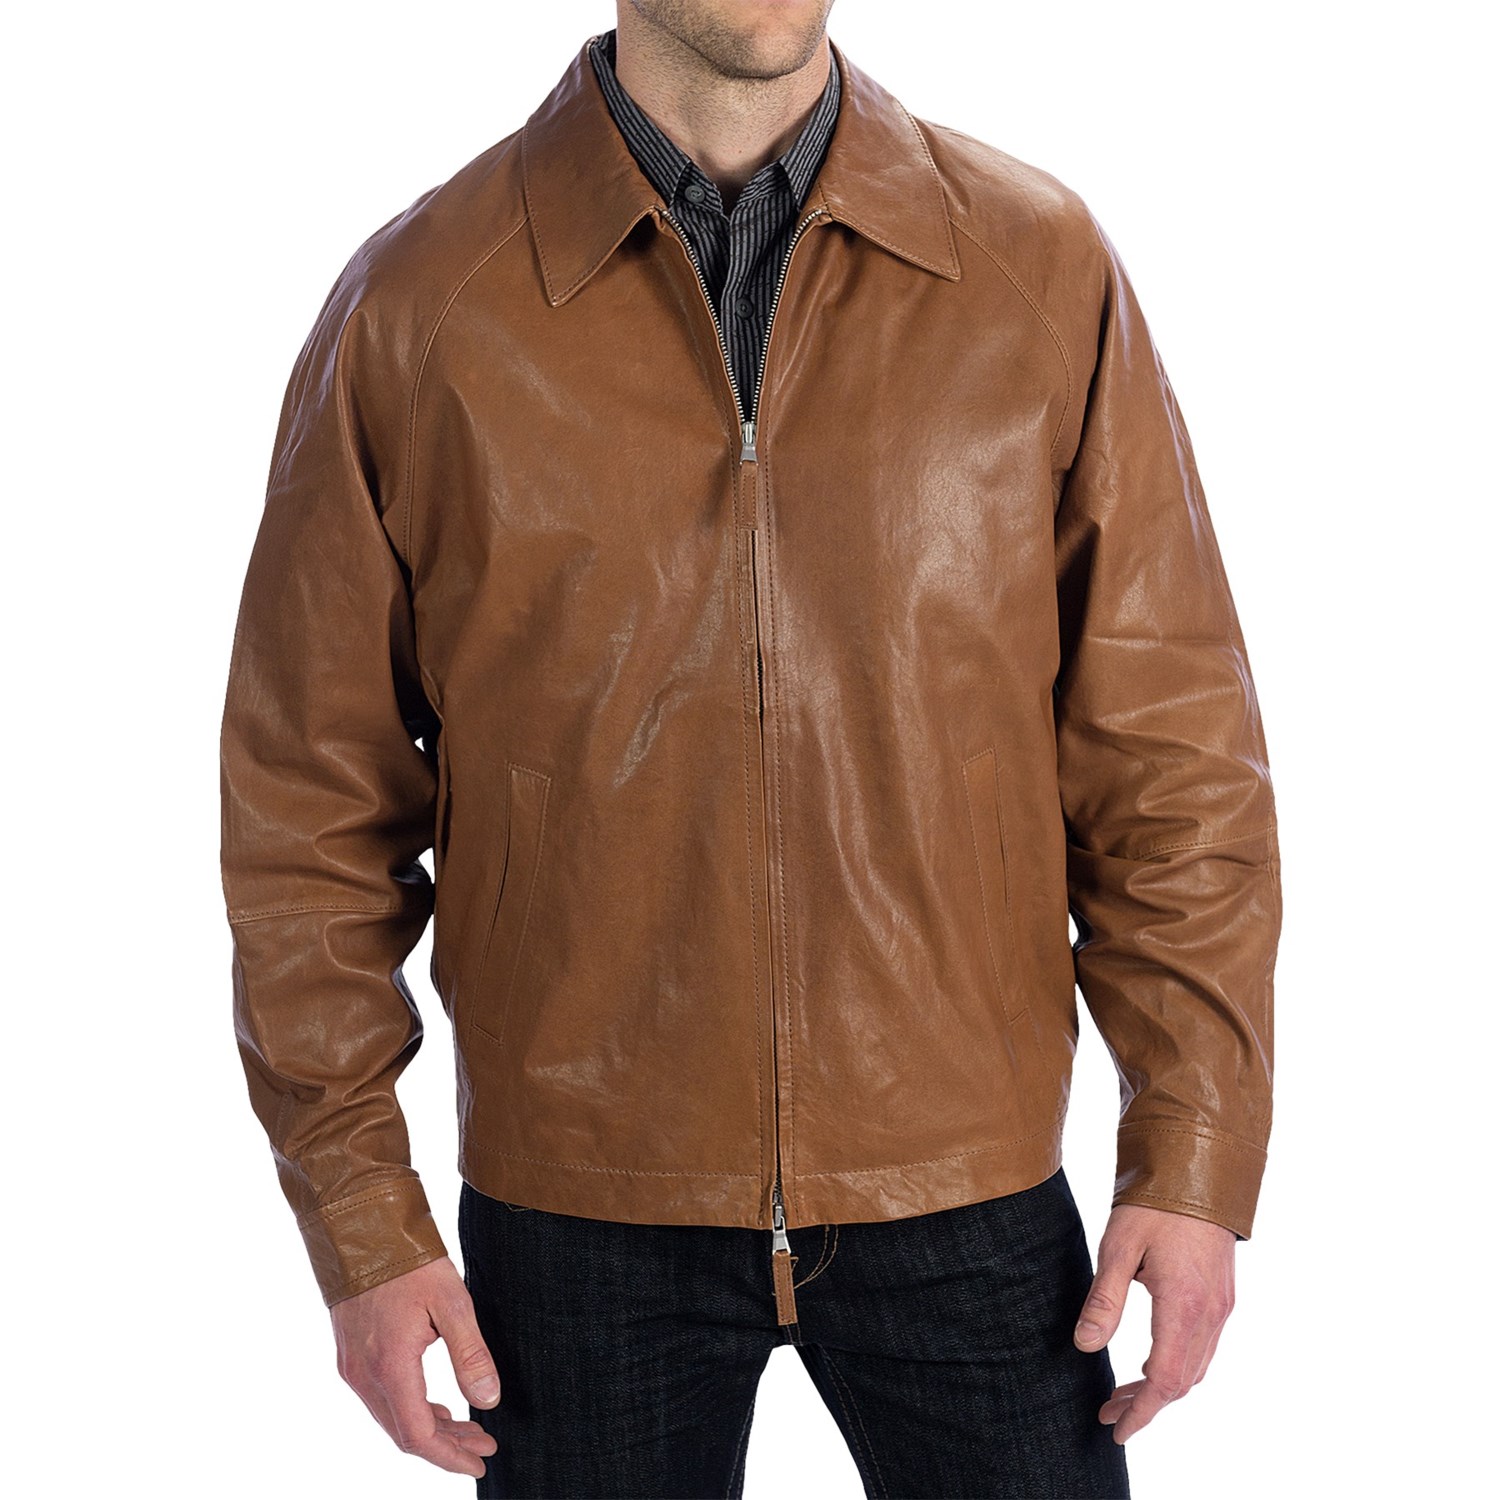 Golden Bear Buckley Leather Jacket (For Men) - Save 51%